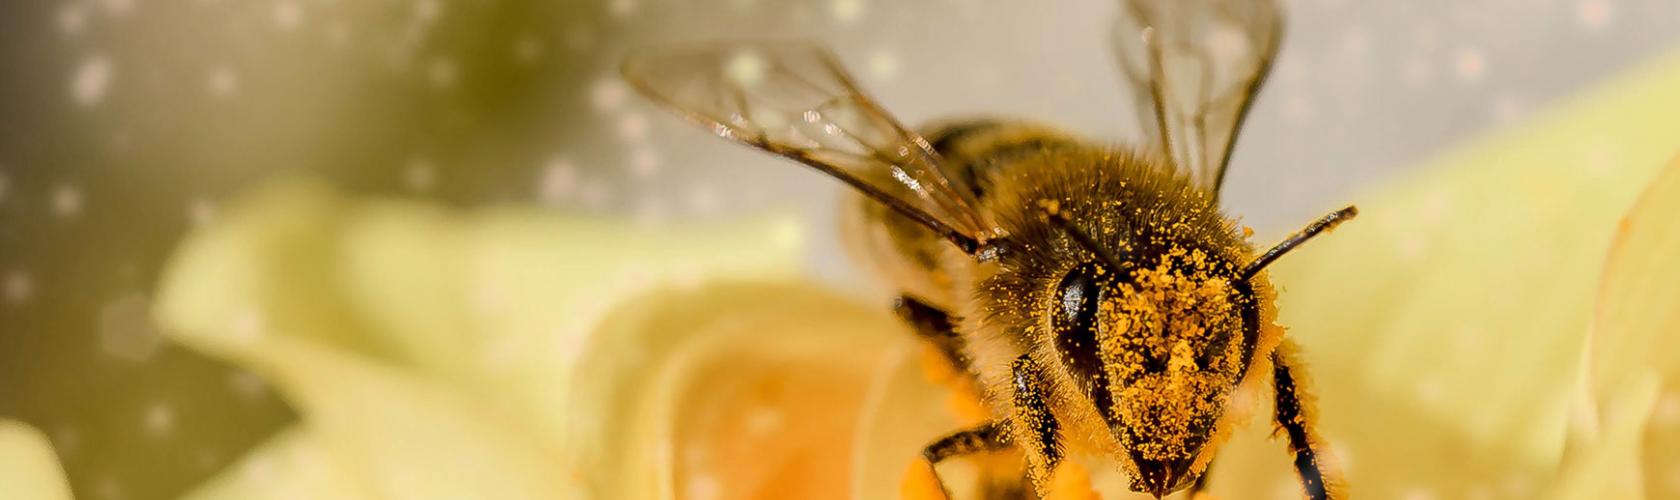 Apiterapie je léčebnou metodou využívající včelích produktů a přípravků z nich vytvořených k léčebným účelům